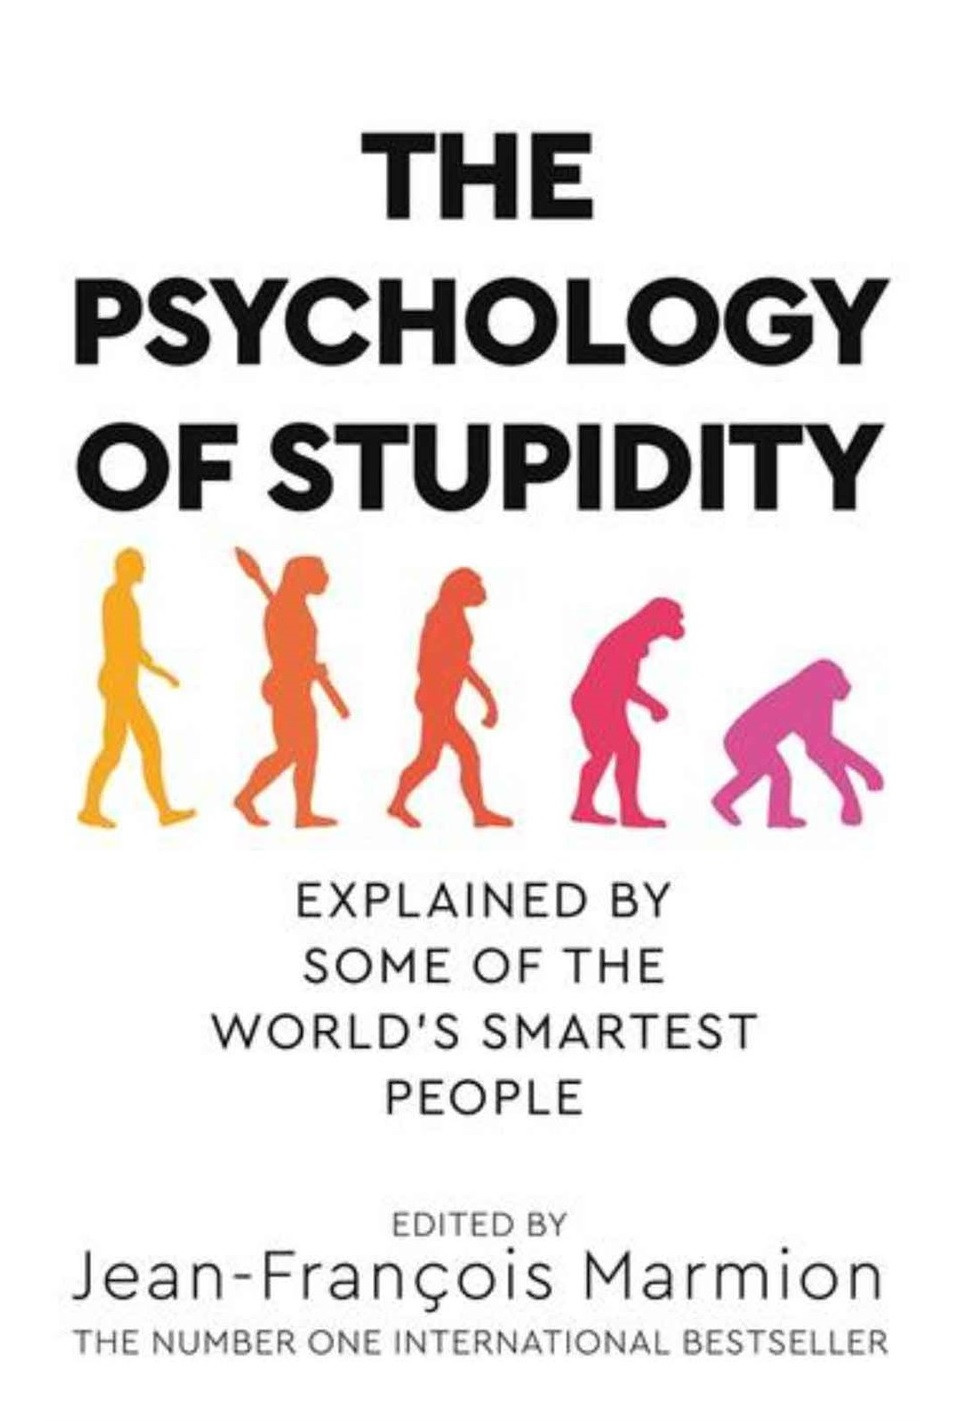 The psychology of stupidity